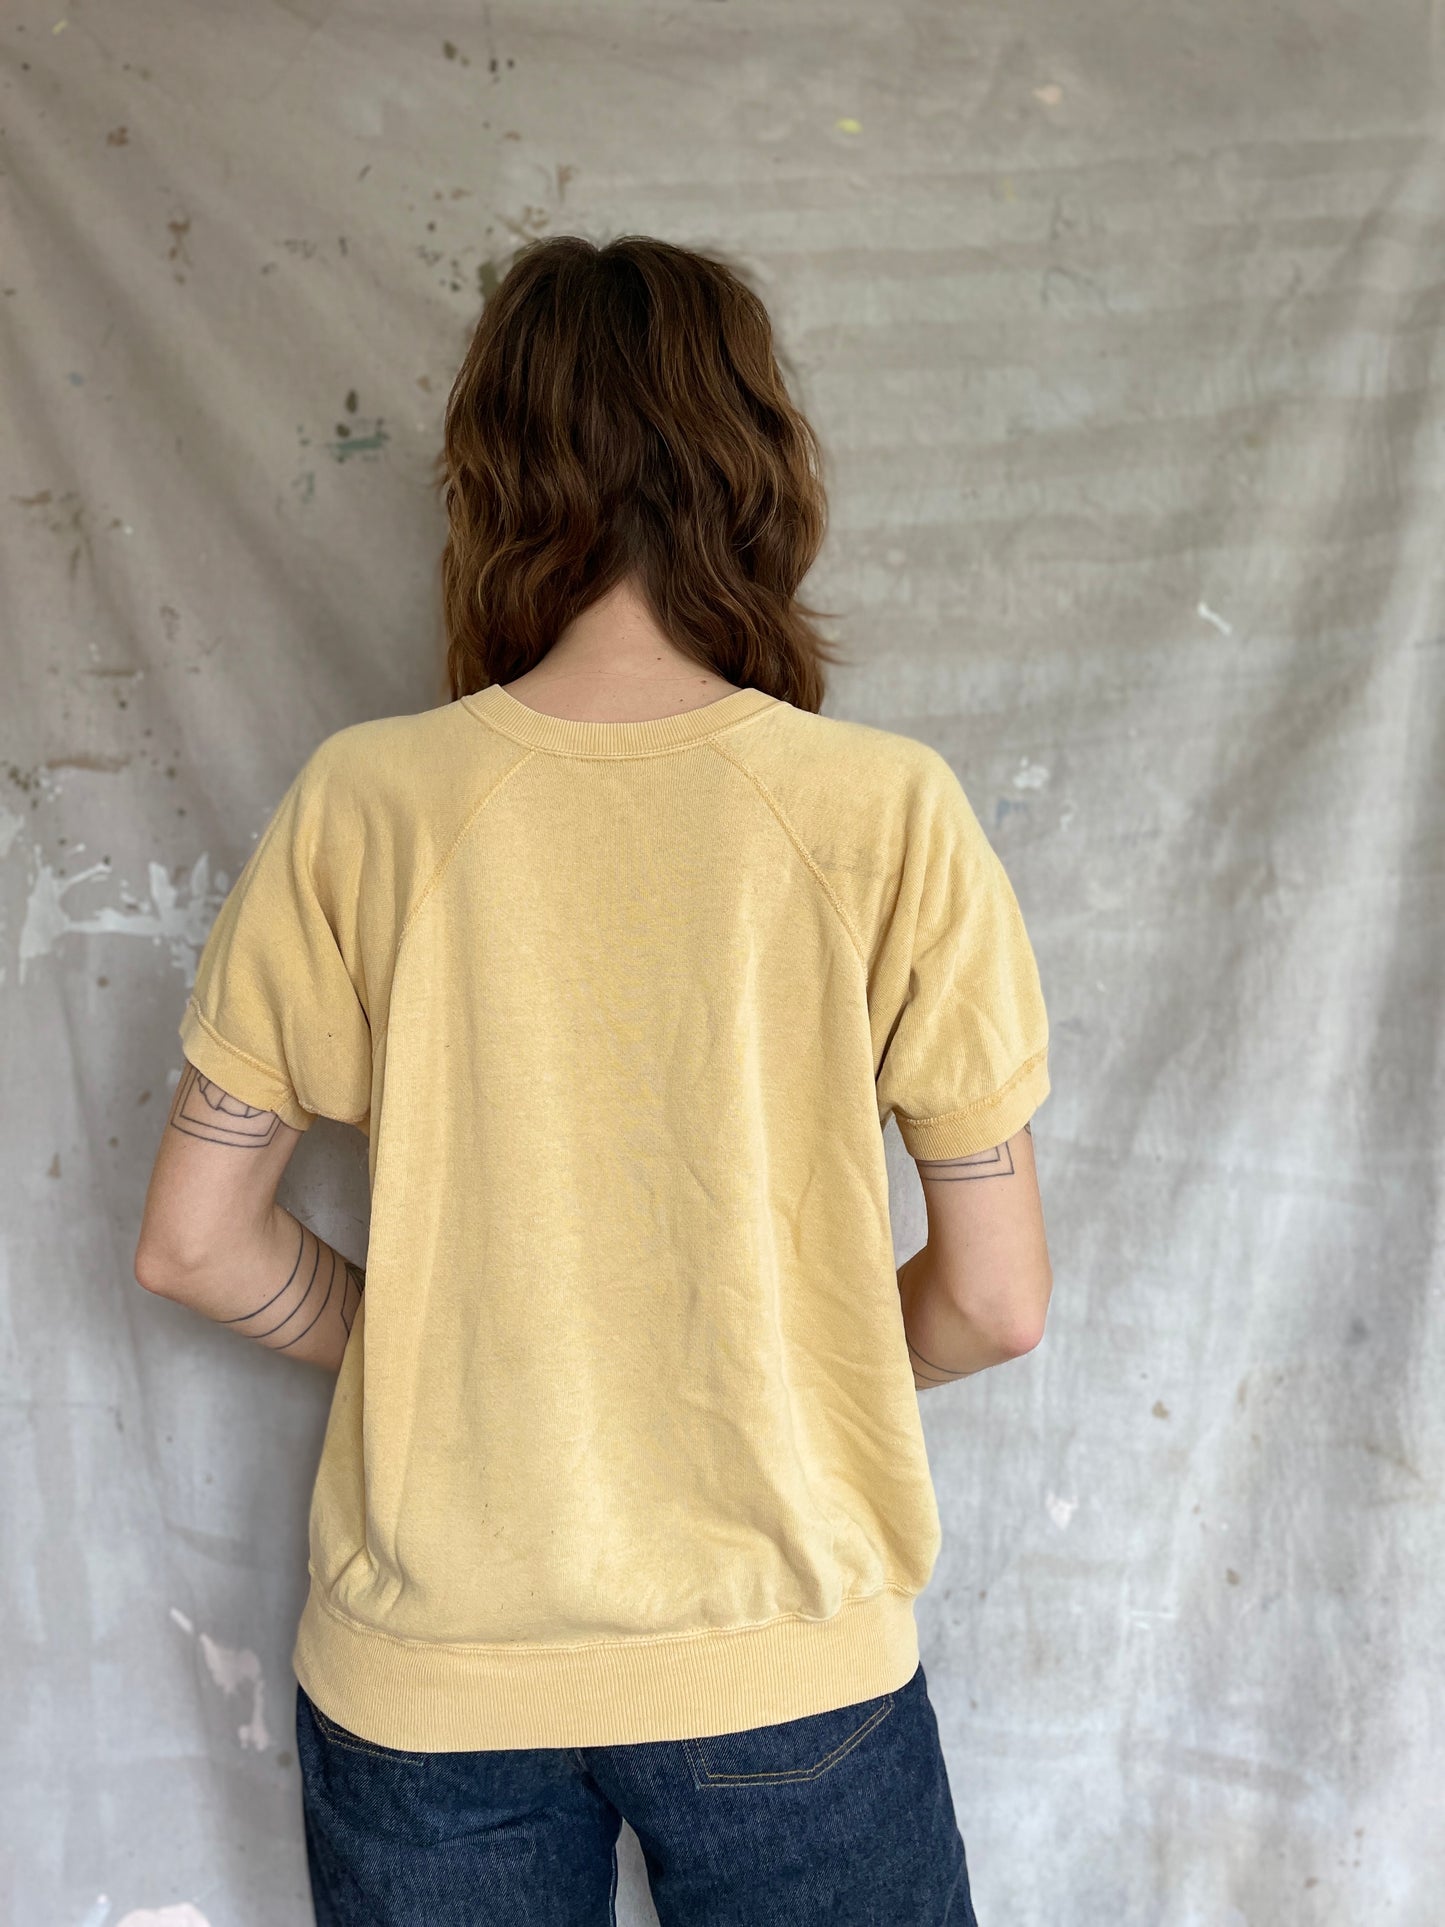 70s/80s Blank Yellow Sweatshirt